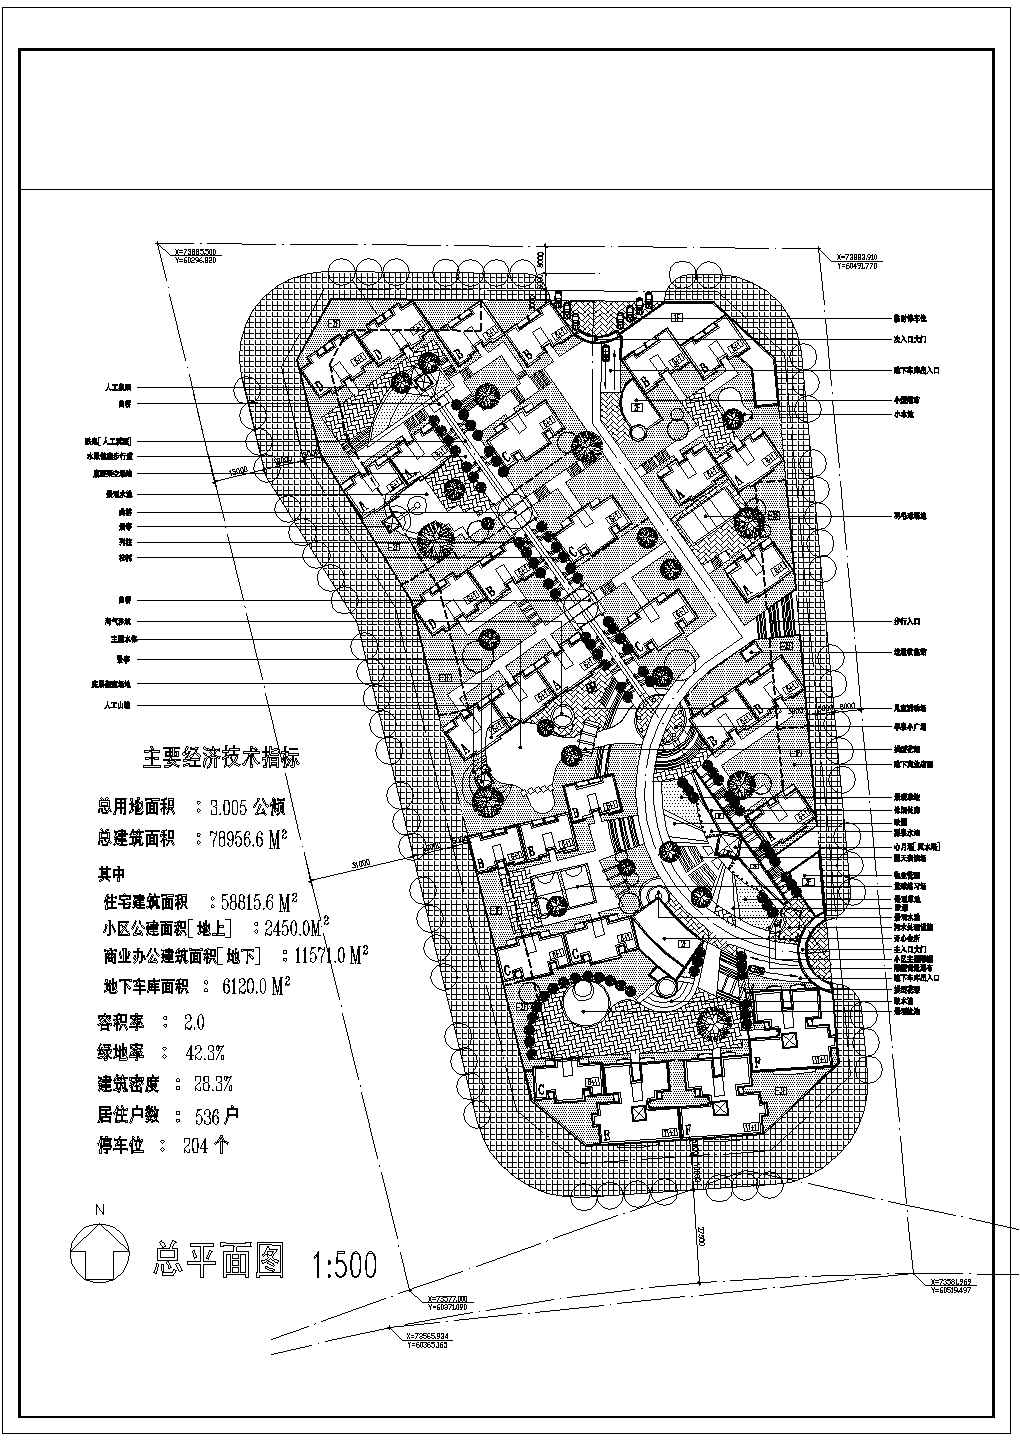 总用地3.005Ha多层住宅小区规划总平面CAD图